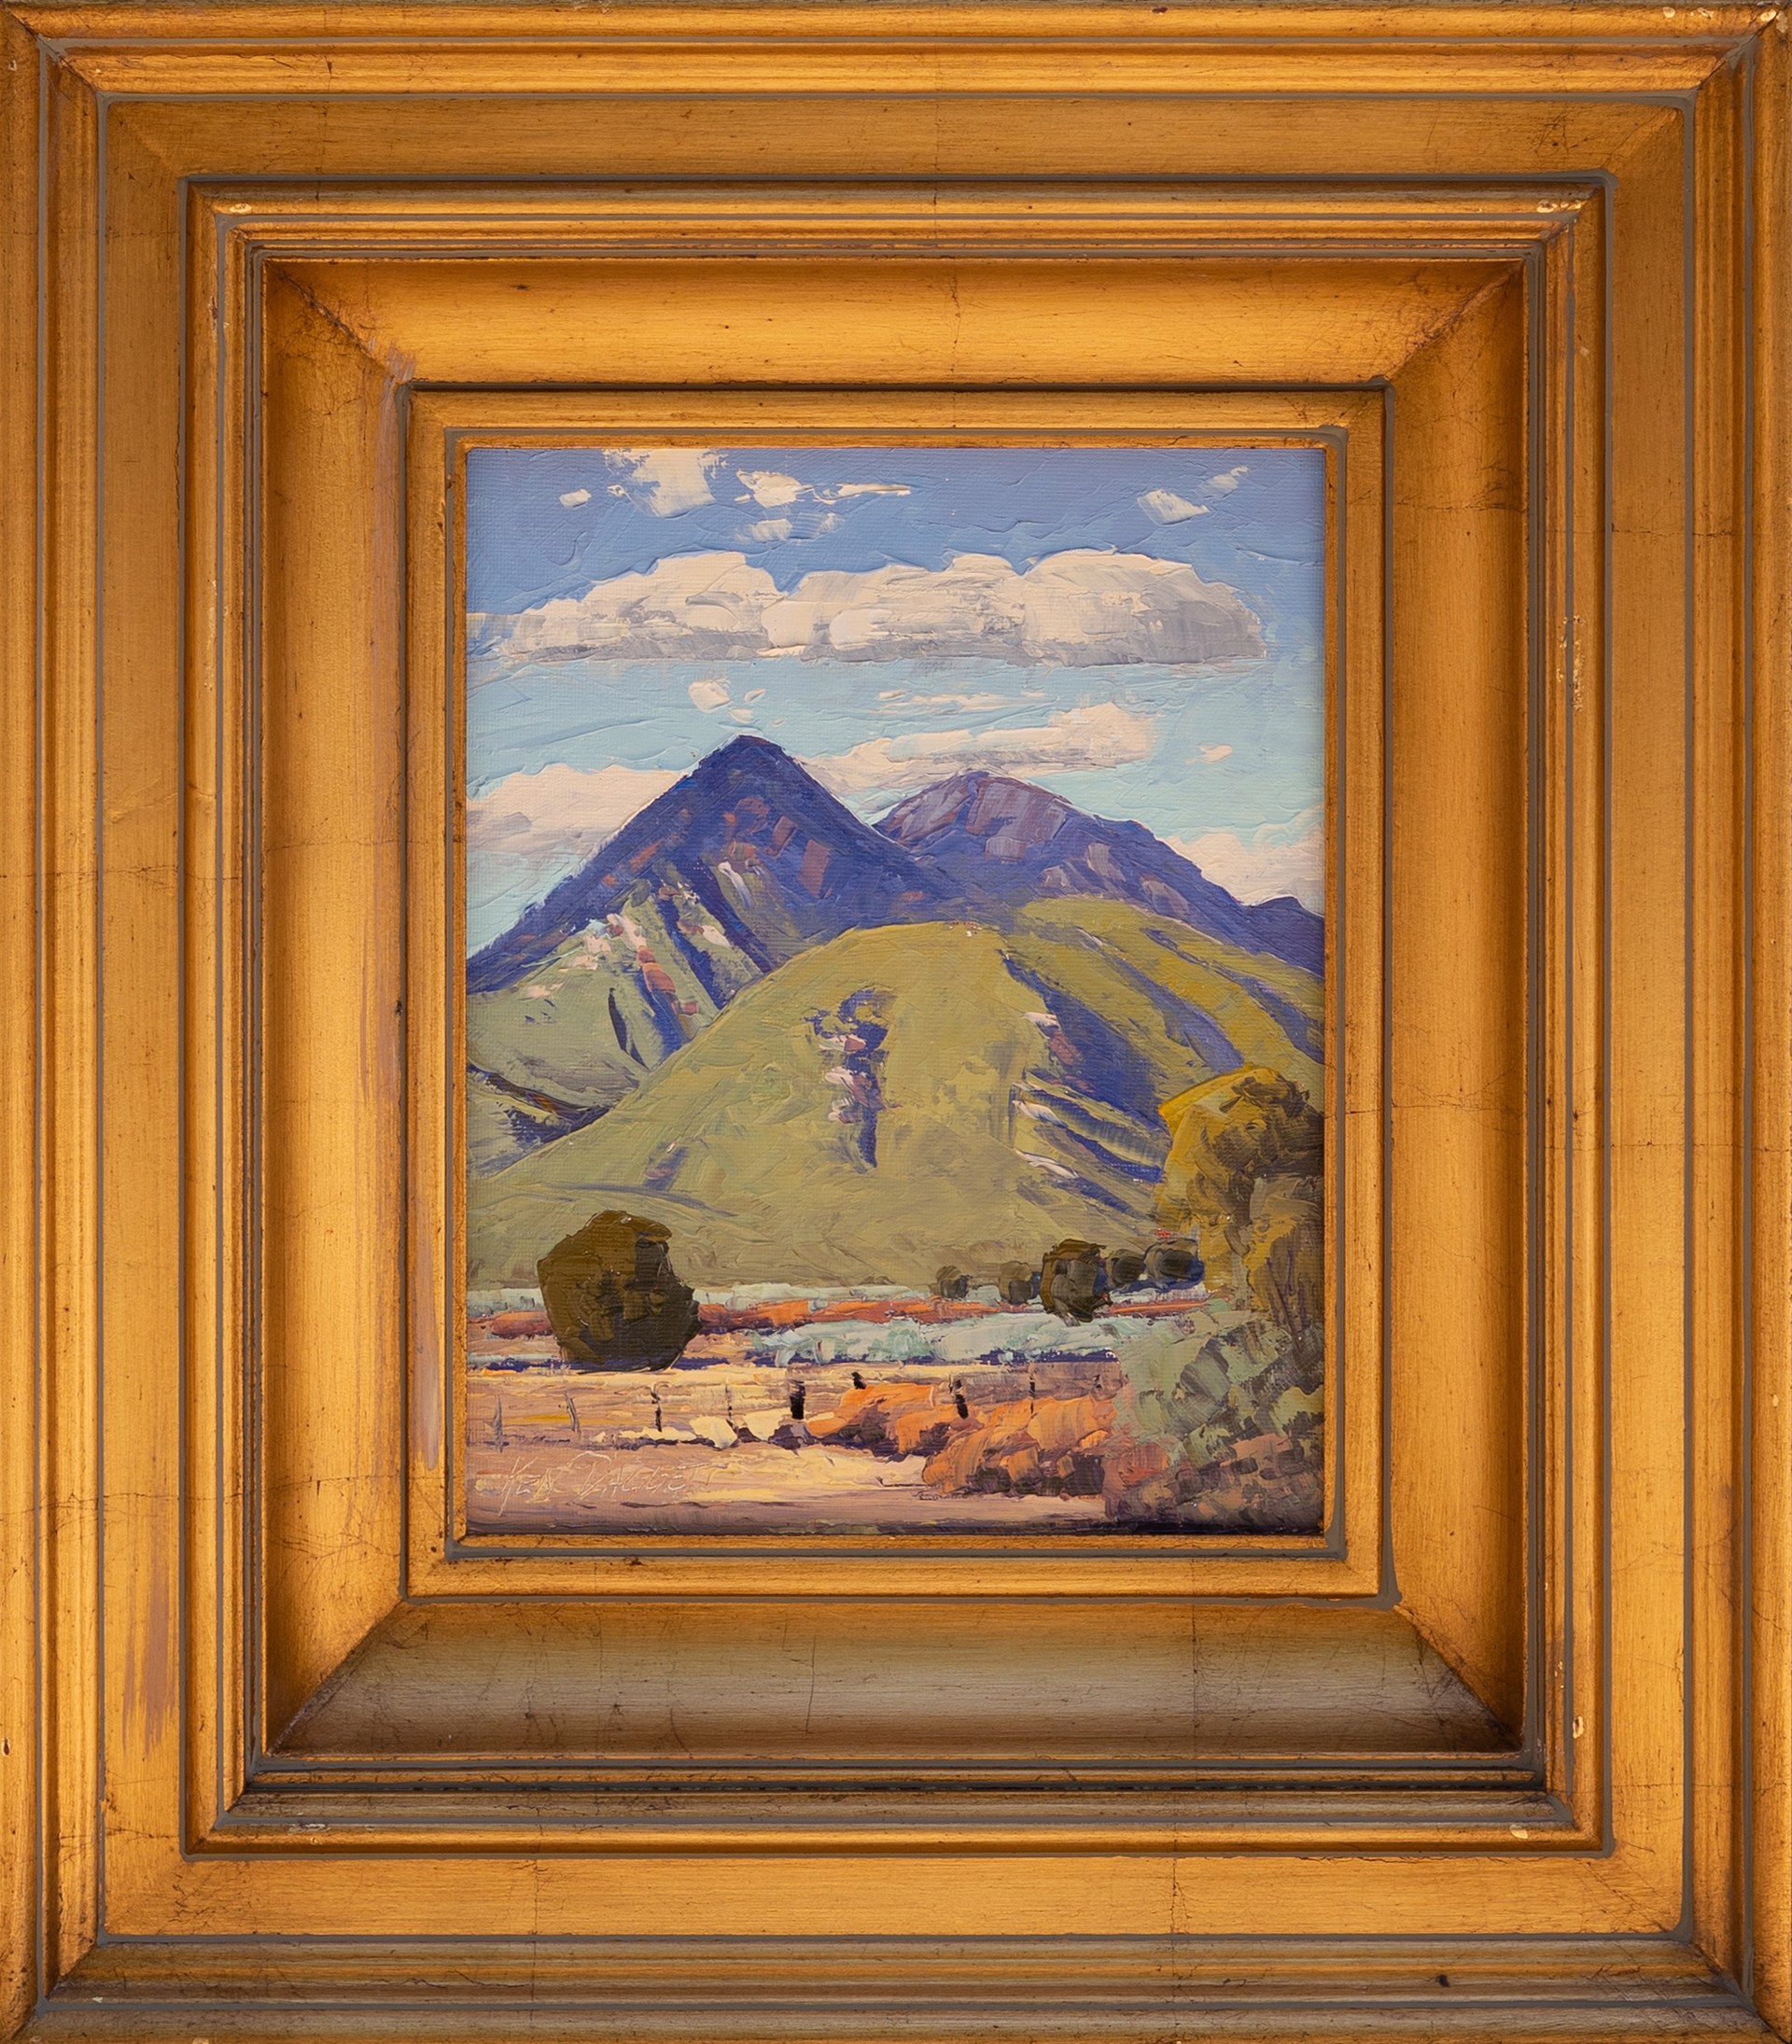 Taos Mountain by Ken Daggett